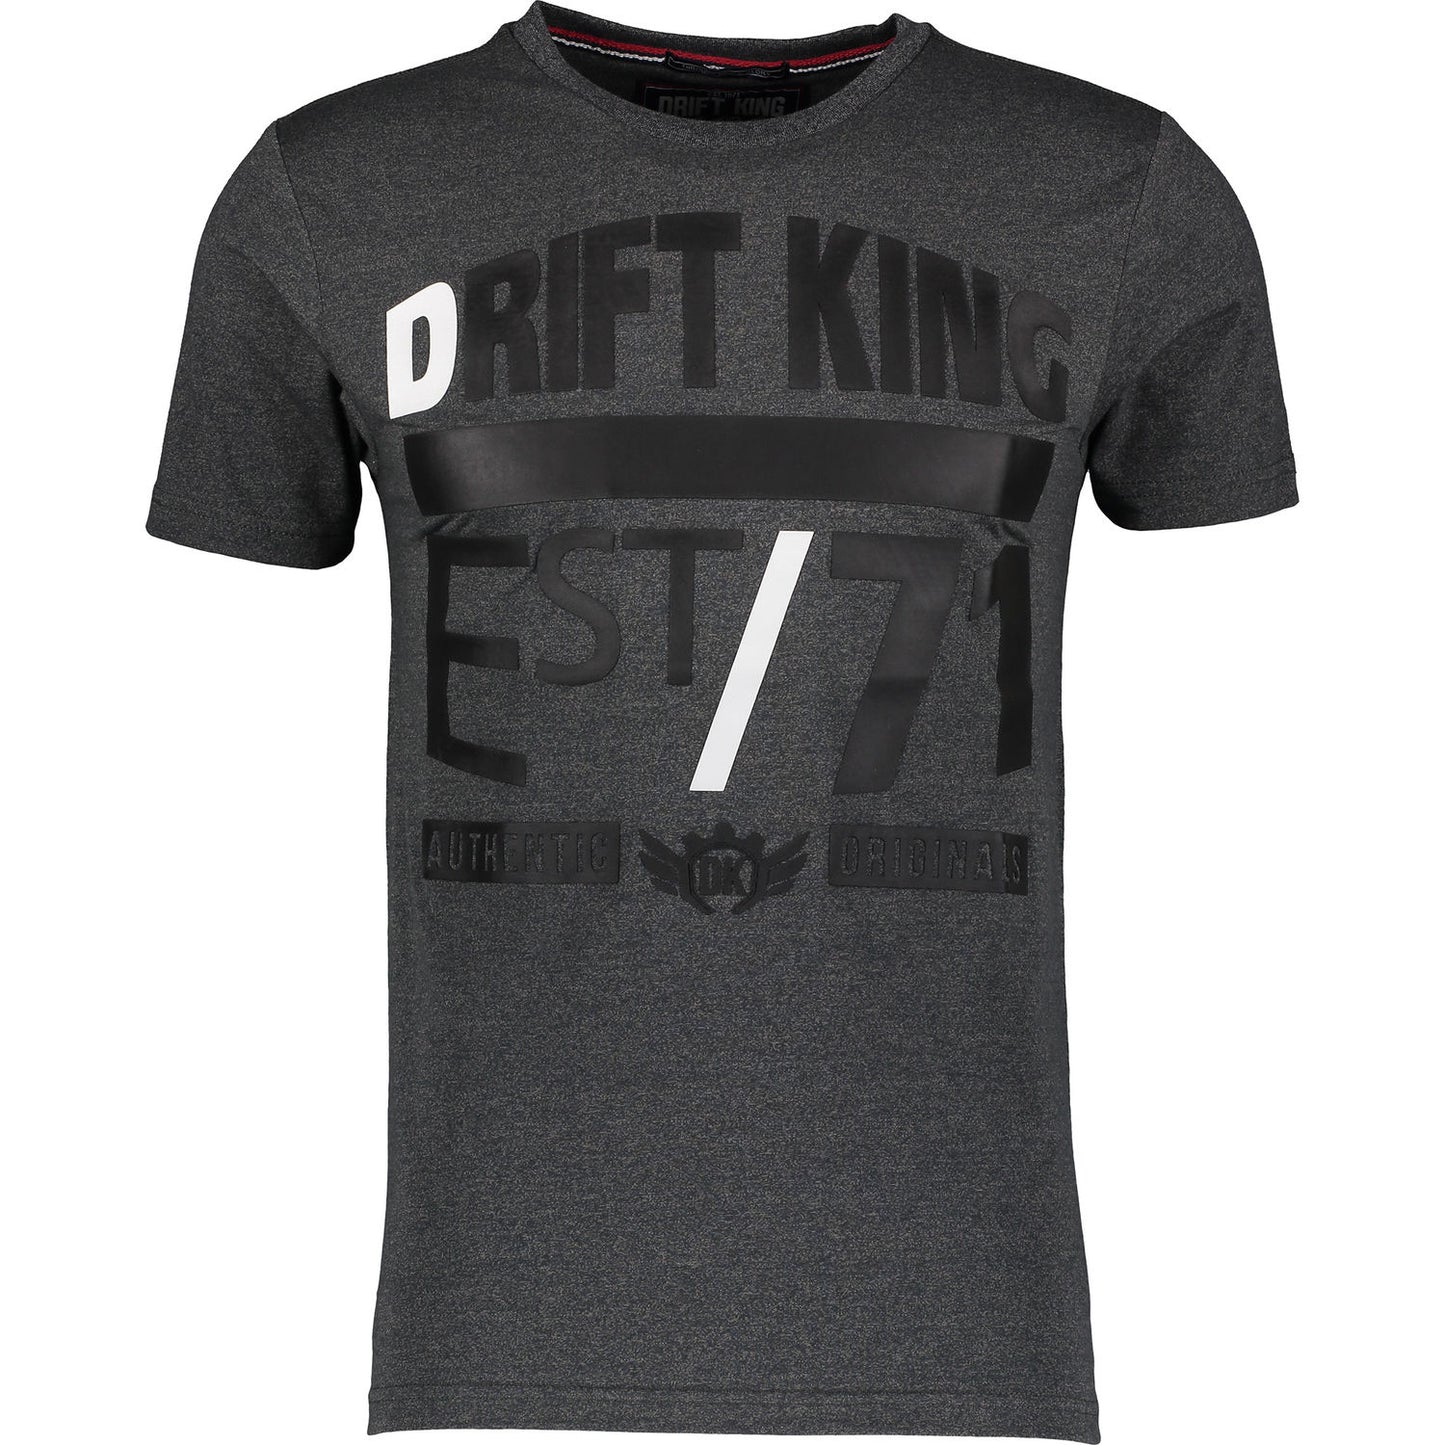 Drift King - Nelson T-Shirt - LabelledUp.com